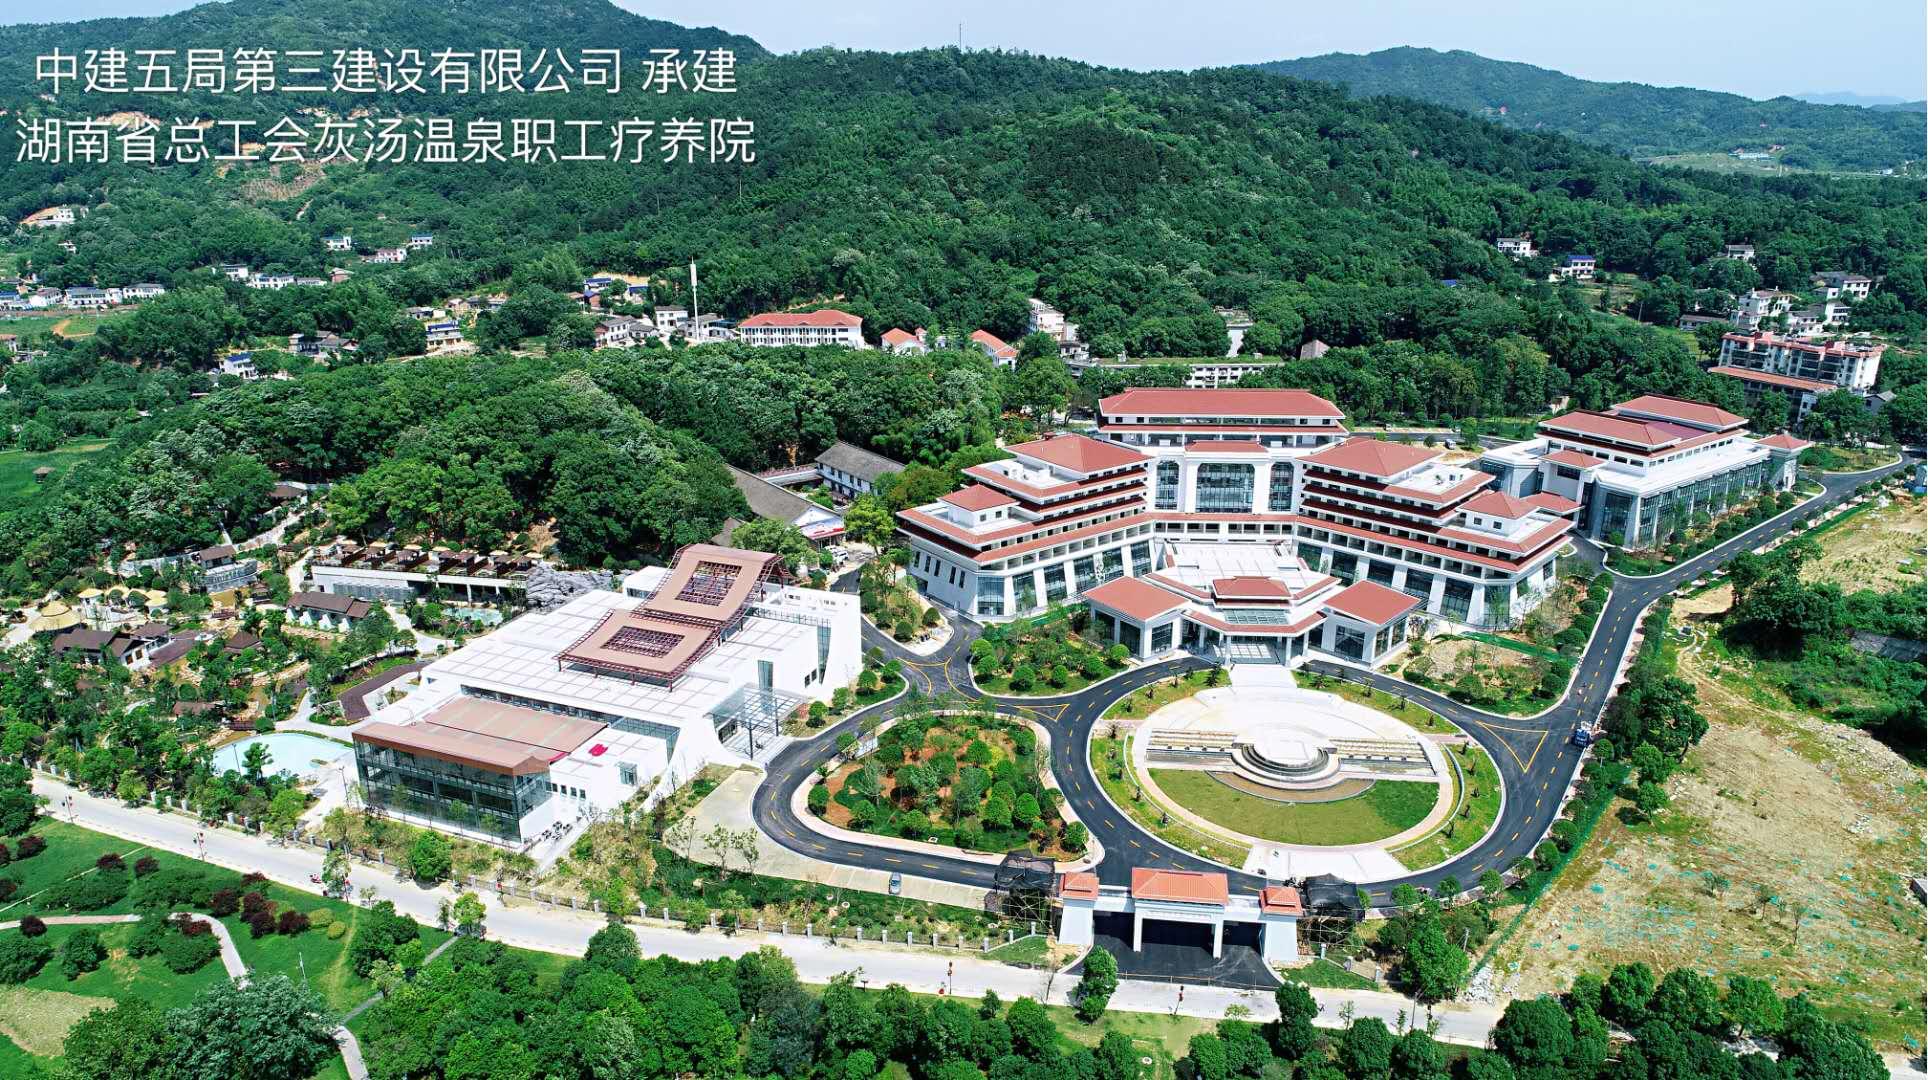 湖南省總工會灰湯溫泉職工療養院改擴建項目